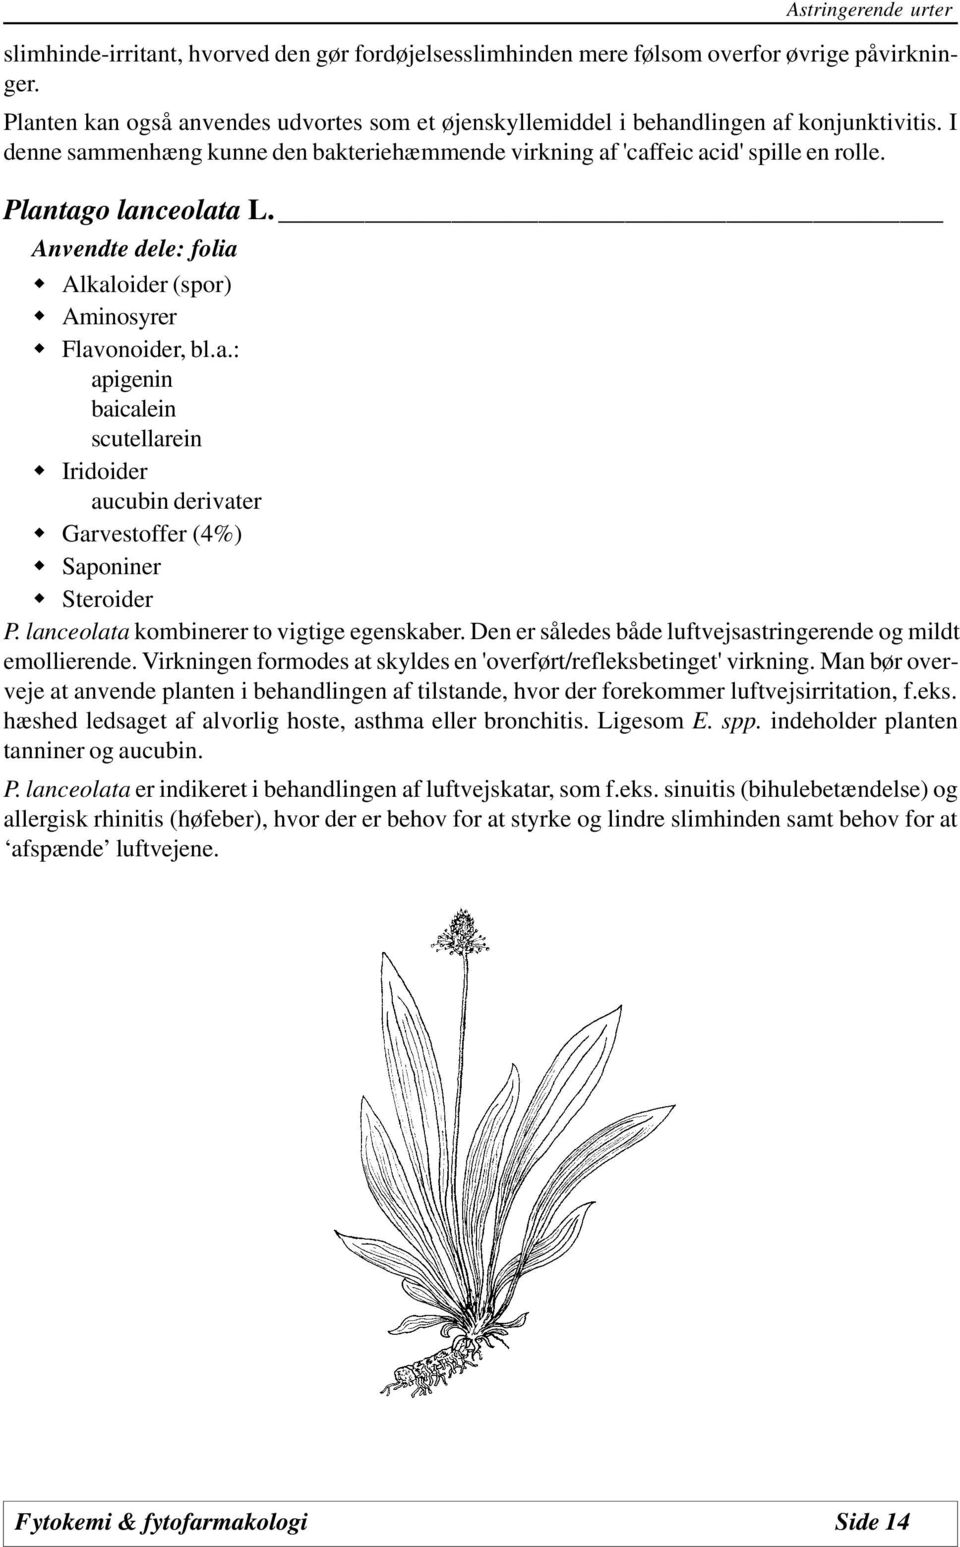 Plantago lanceolata L. Anvendte dele: folia Alkaloider (spor) Aminosyrer Flavonoider, bl.a.: apigenin baicalein scutellarein Iridoider aucubin derivater Garvestoffer (4%) Saponiner Steroider P.